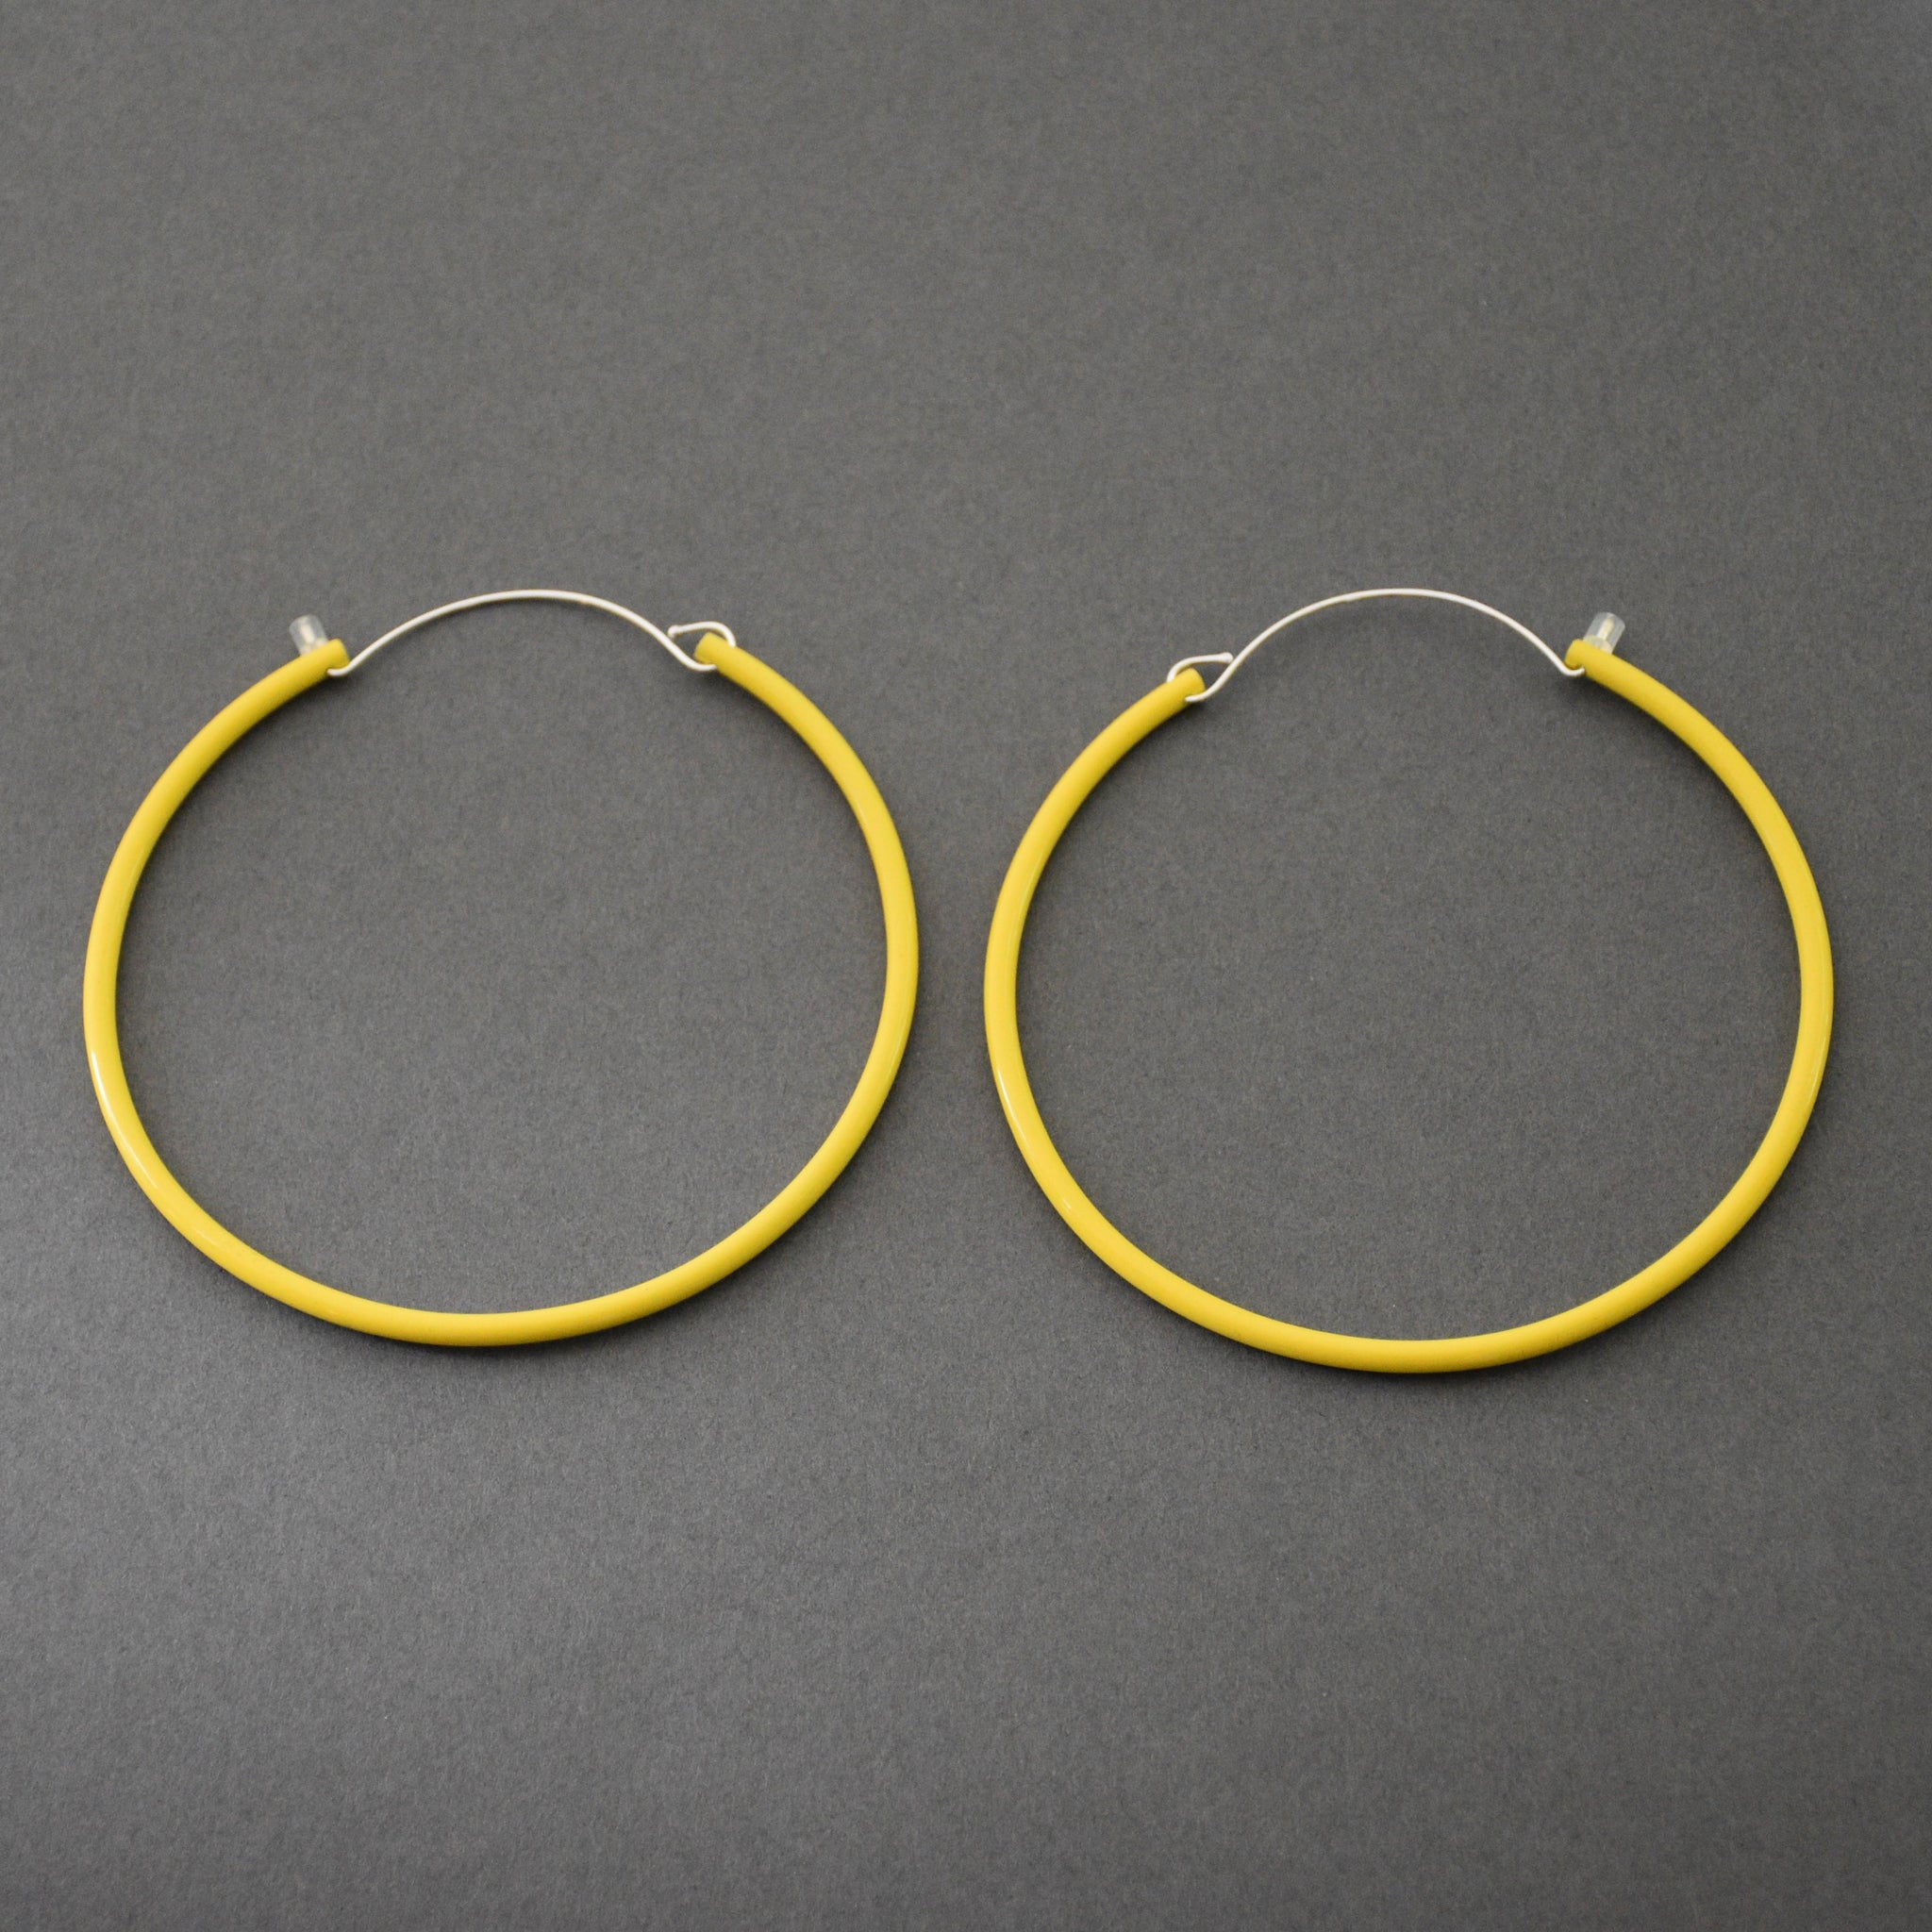 Tubing Hoop Bangle Earrings - Large, Yellow